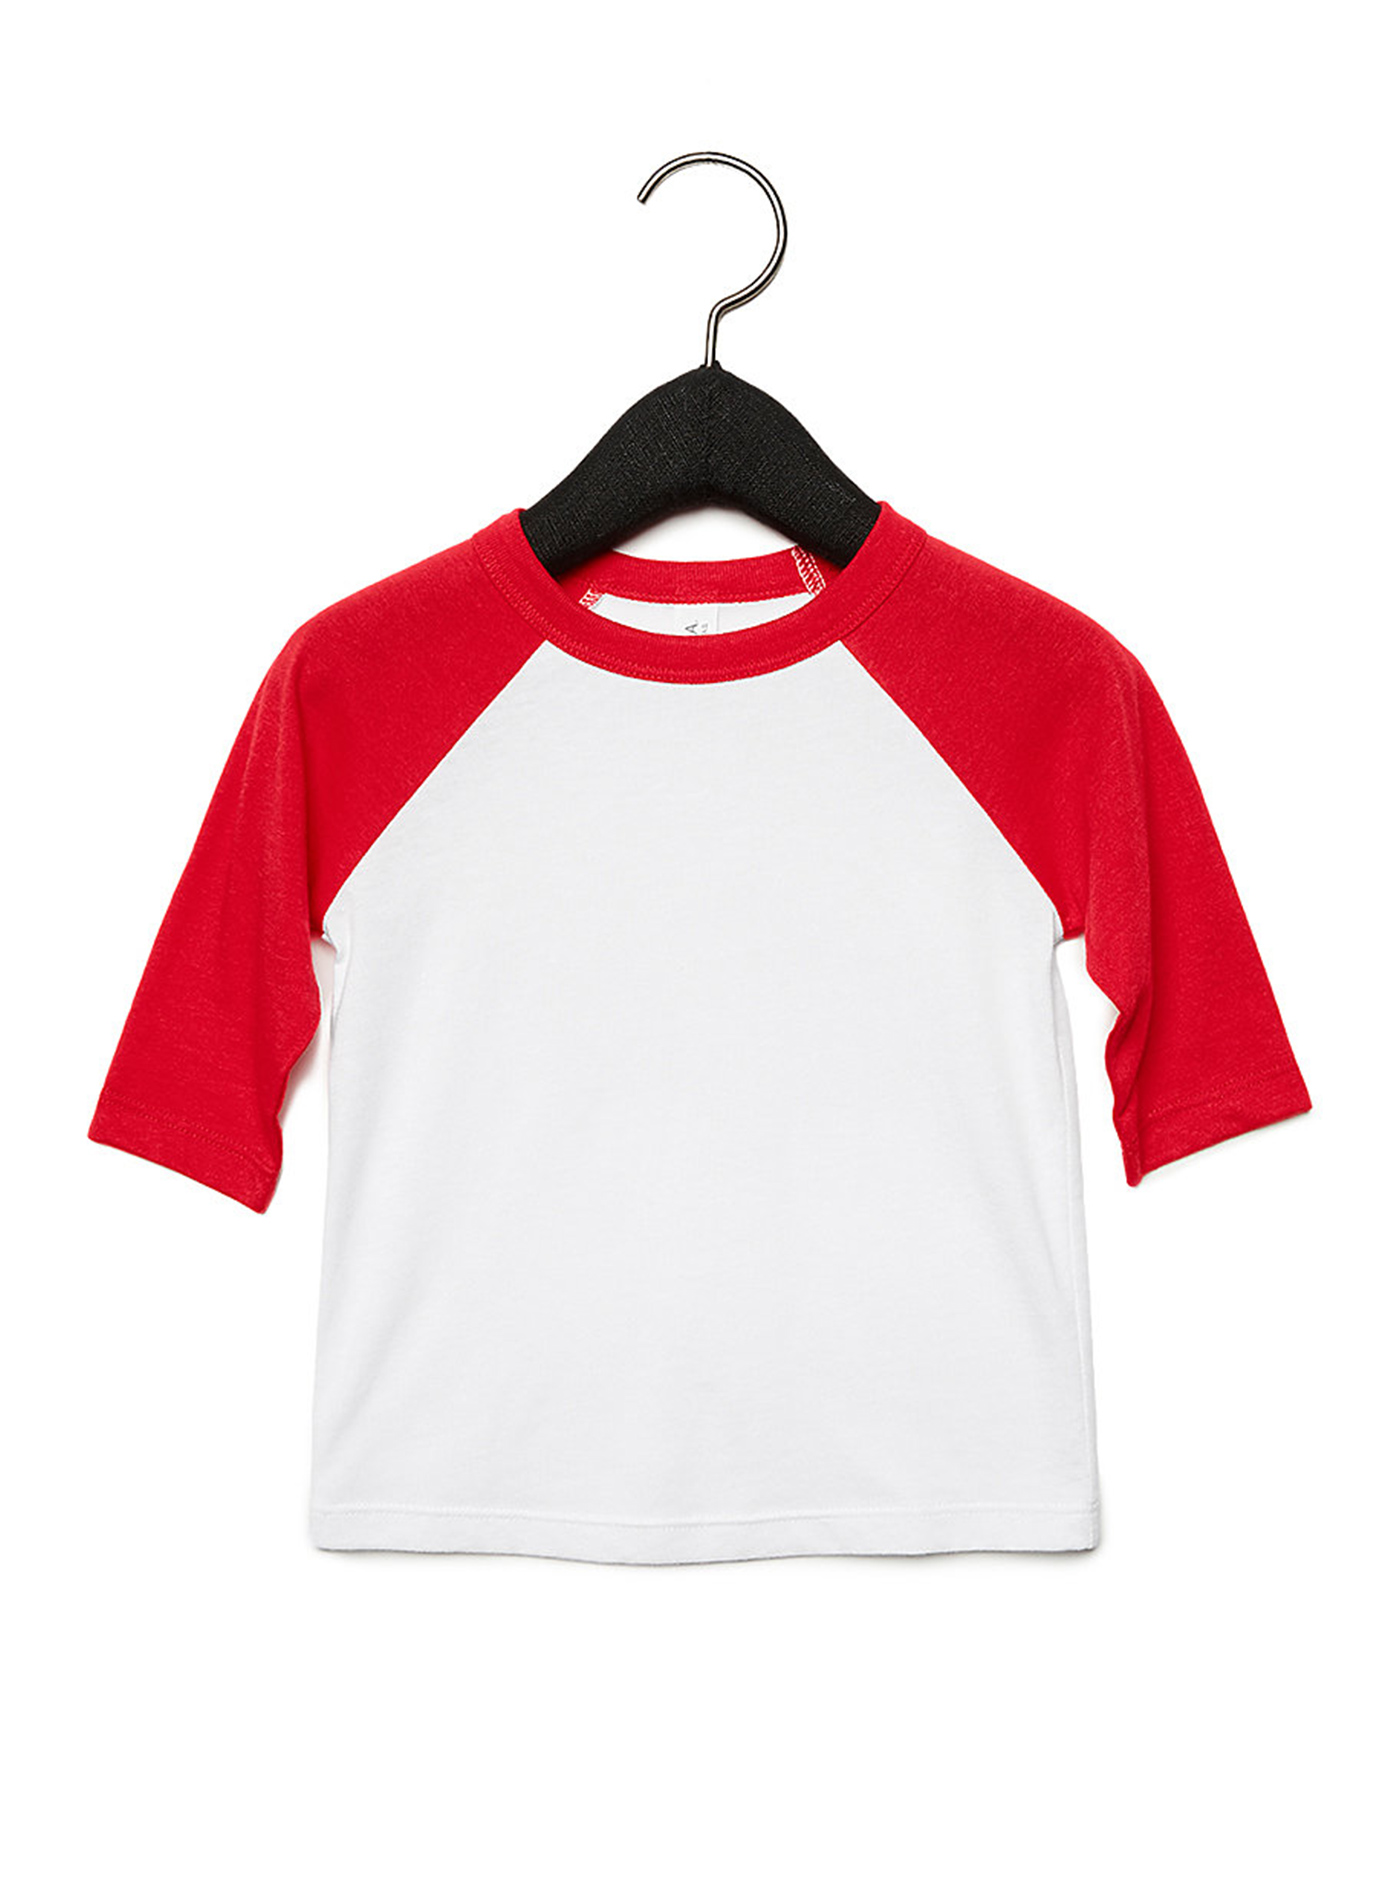 Dětské tričko Baseball Tee se 3/4 rukávem - Bílá a červená 3T (98)